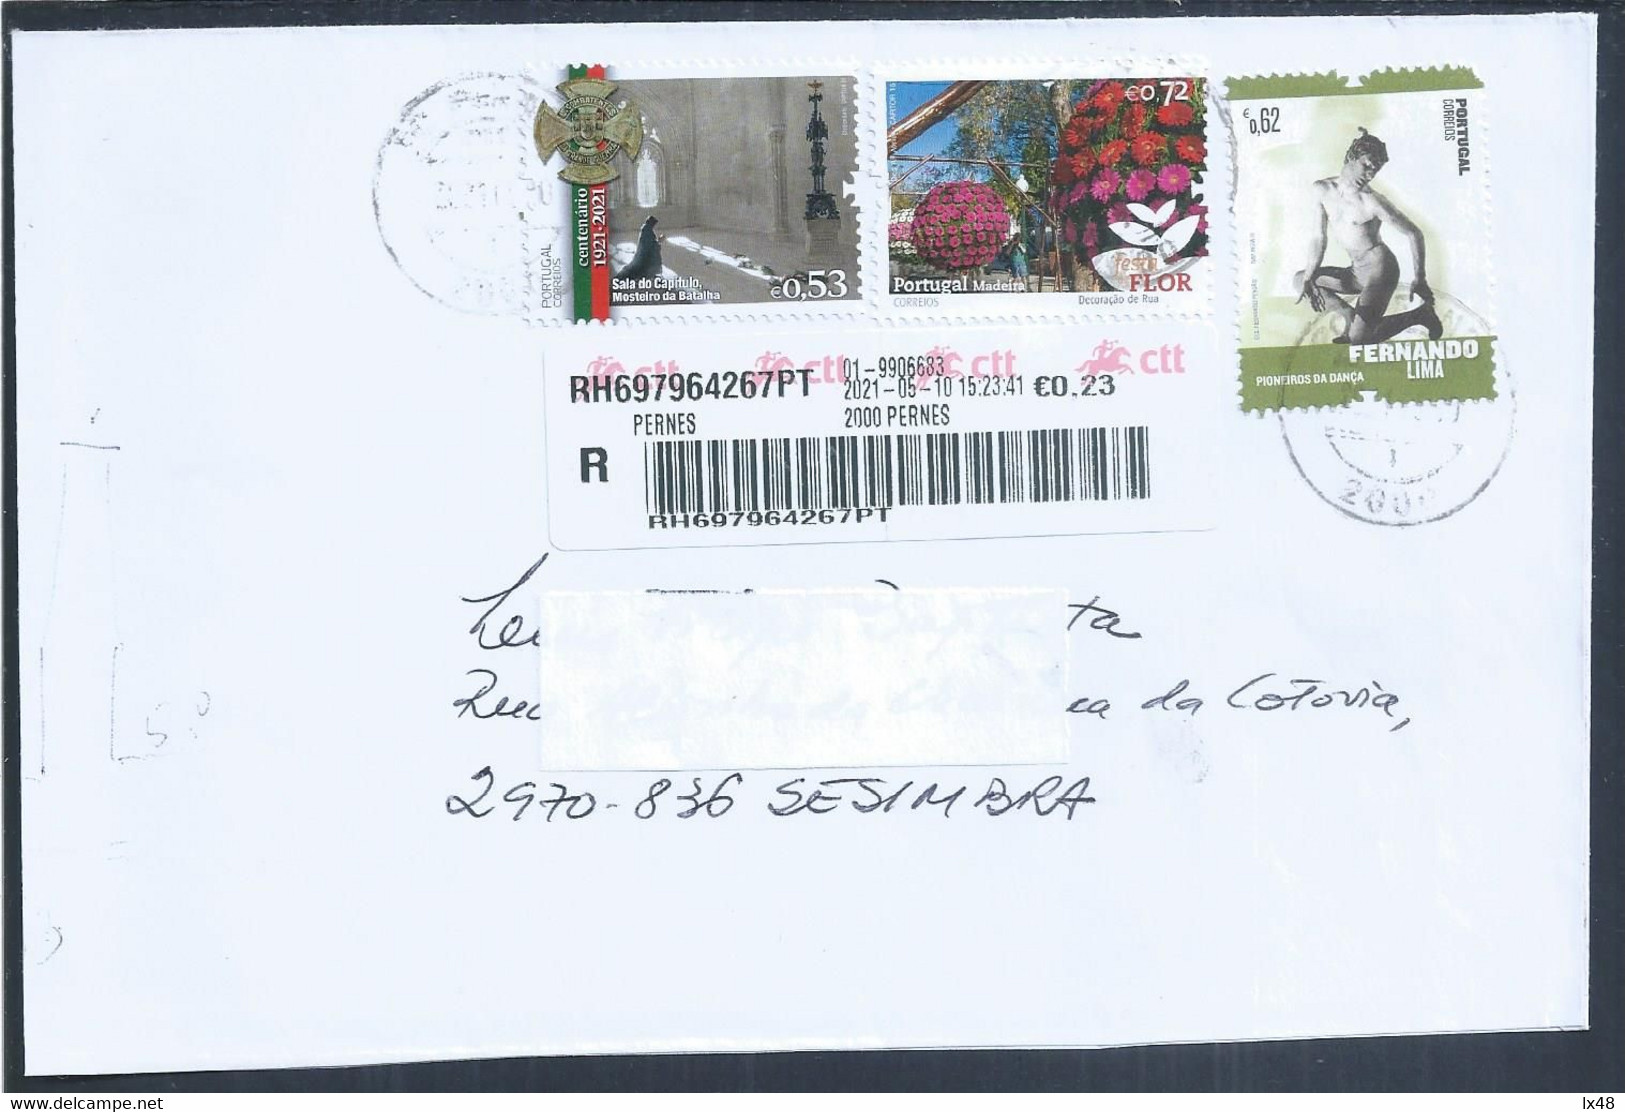 Carta Registada De Pernes, Stamps Mosteiro Da Batalha, Flores Da Madeira E Bailarino Fernando Lima. Dancer. Combatentes - Covers & Documents